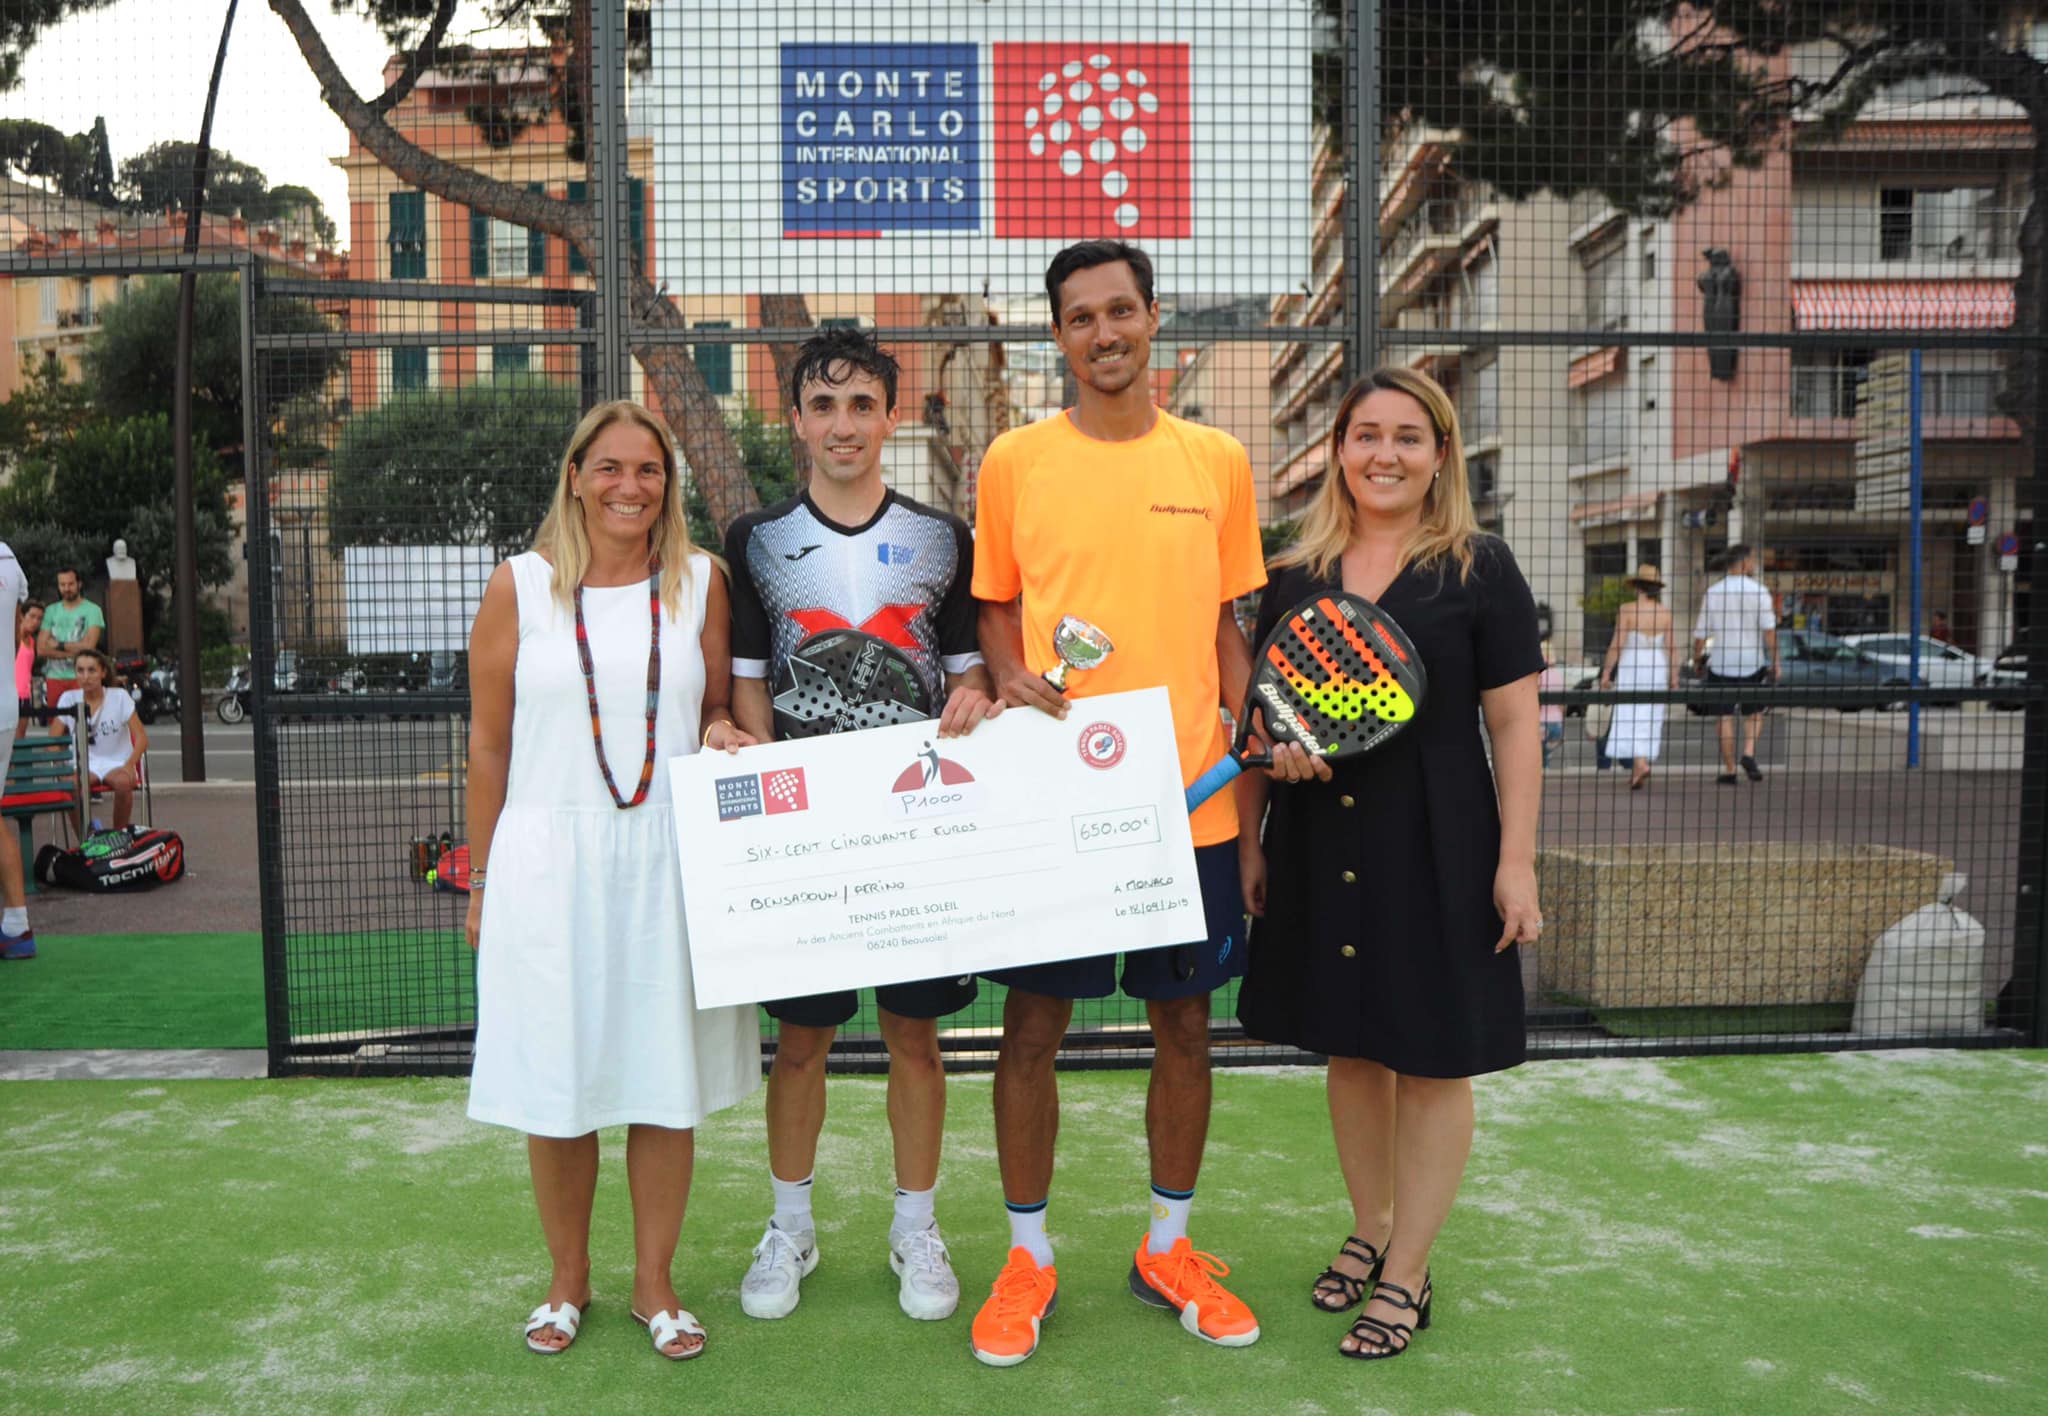 Victòria de Bensadoun / Perino a l'Open Tennis Padel Sol